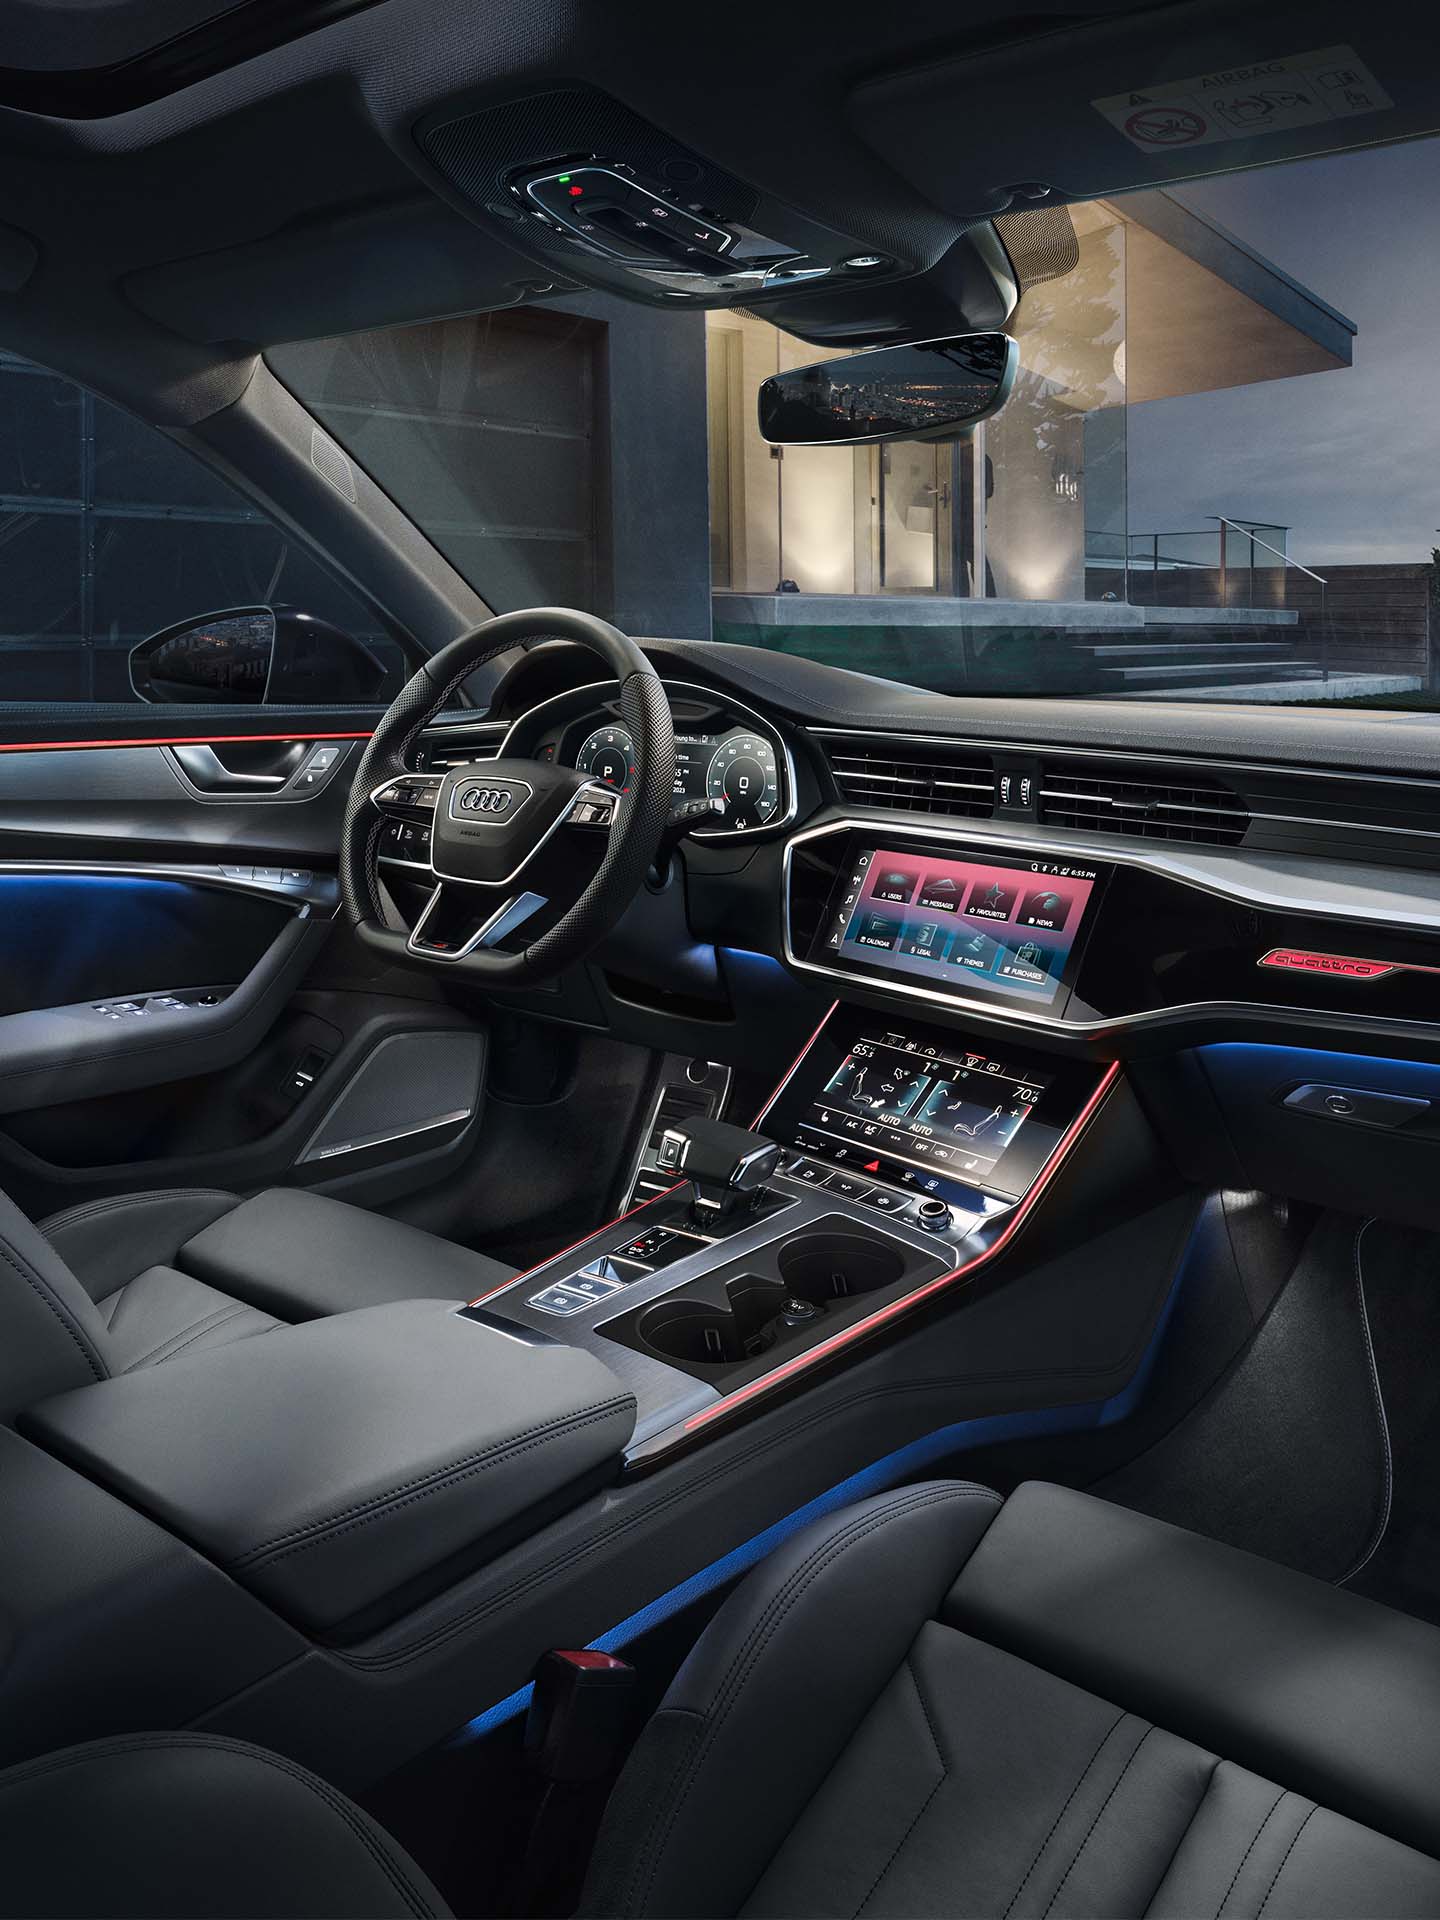 Thèmes lumineux Audi illustrés dans le cockpit